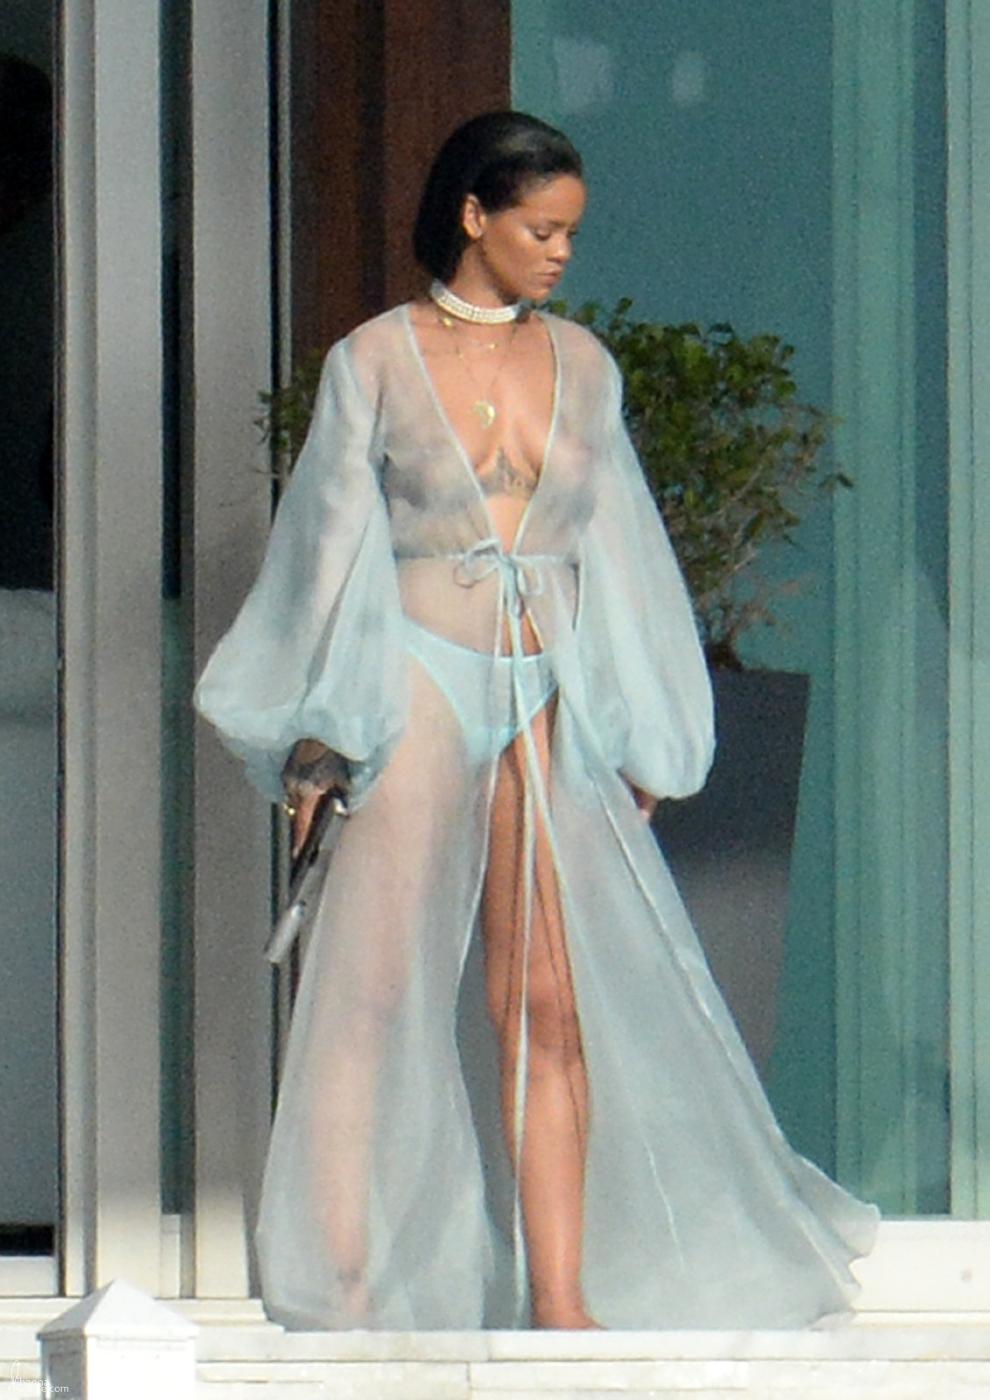 Rihanna Bikini Sheer Robe Nip Slip Photos Leaked